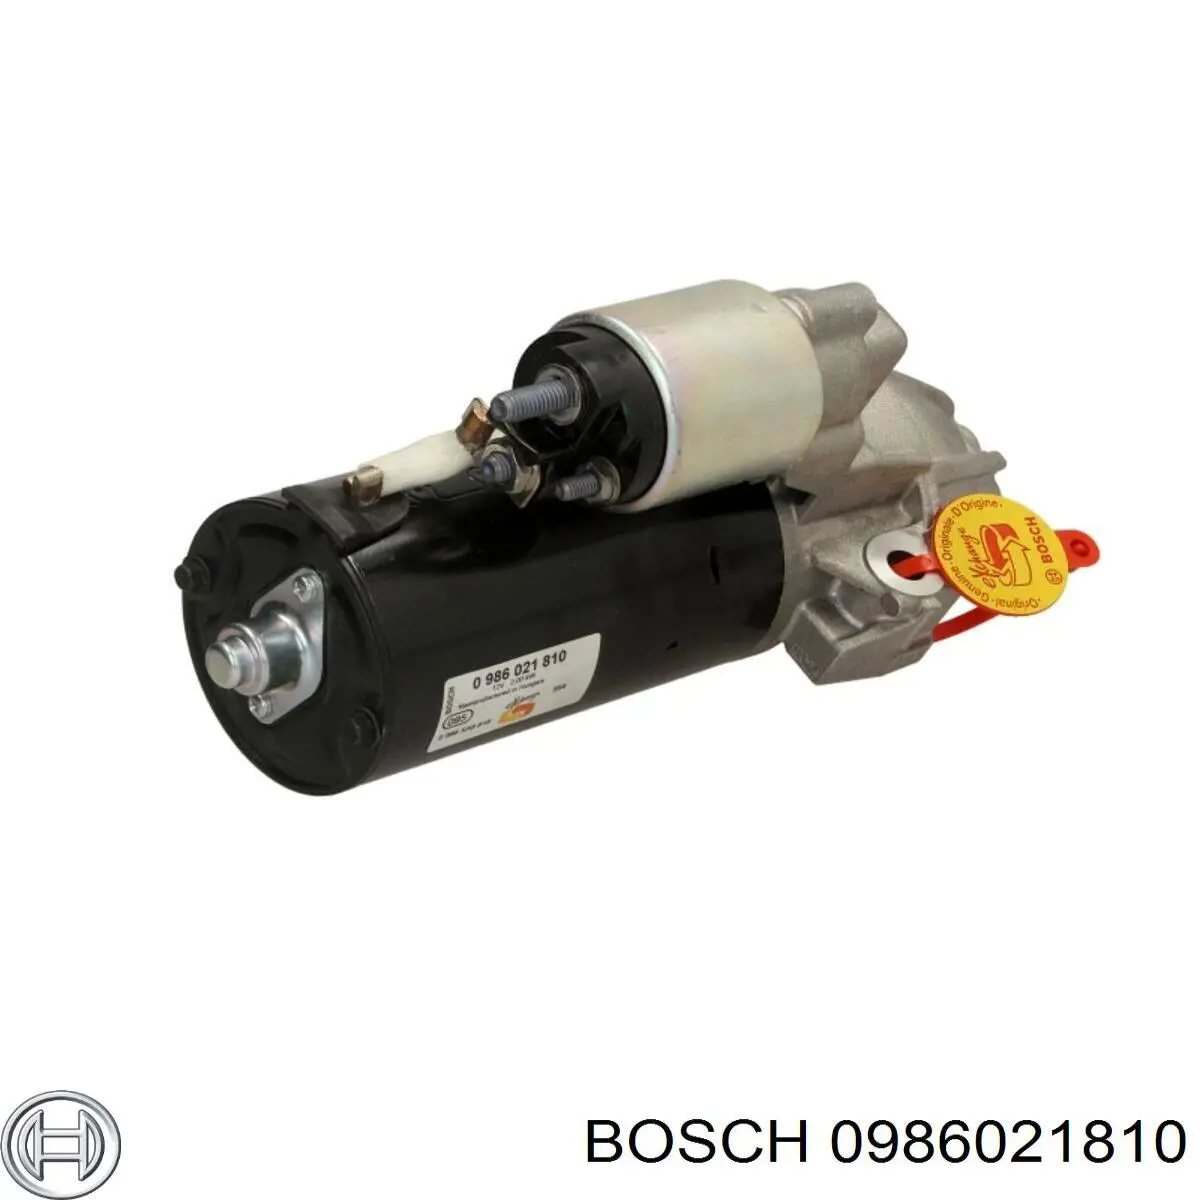 0986021810 Bosch motor de arranque